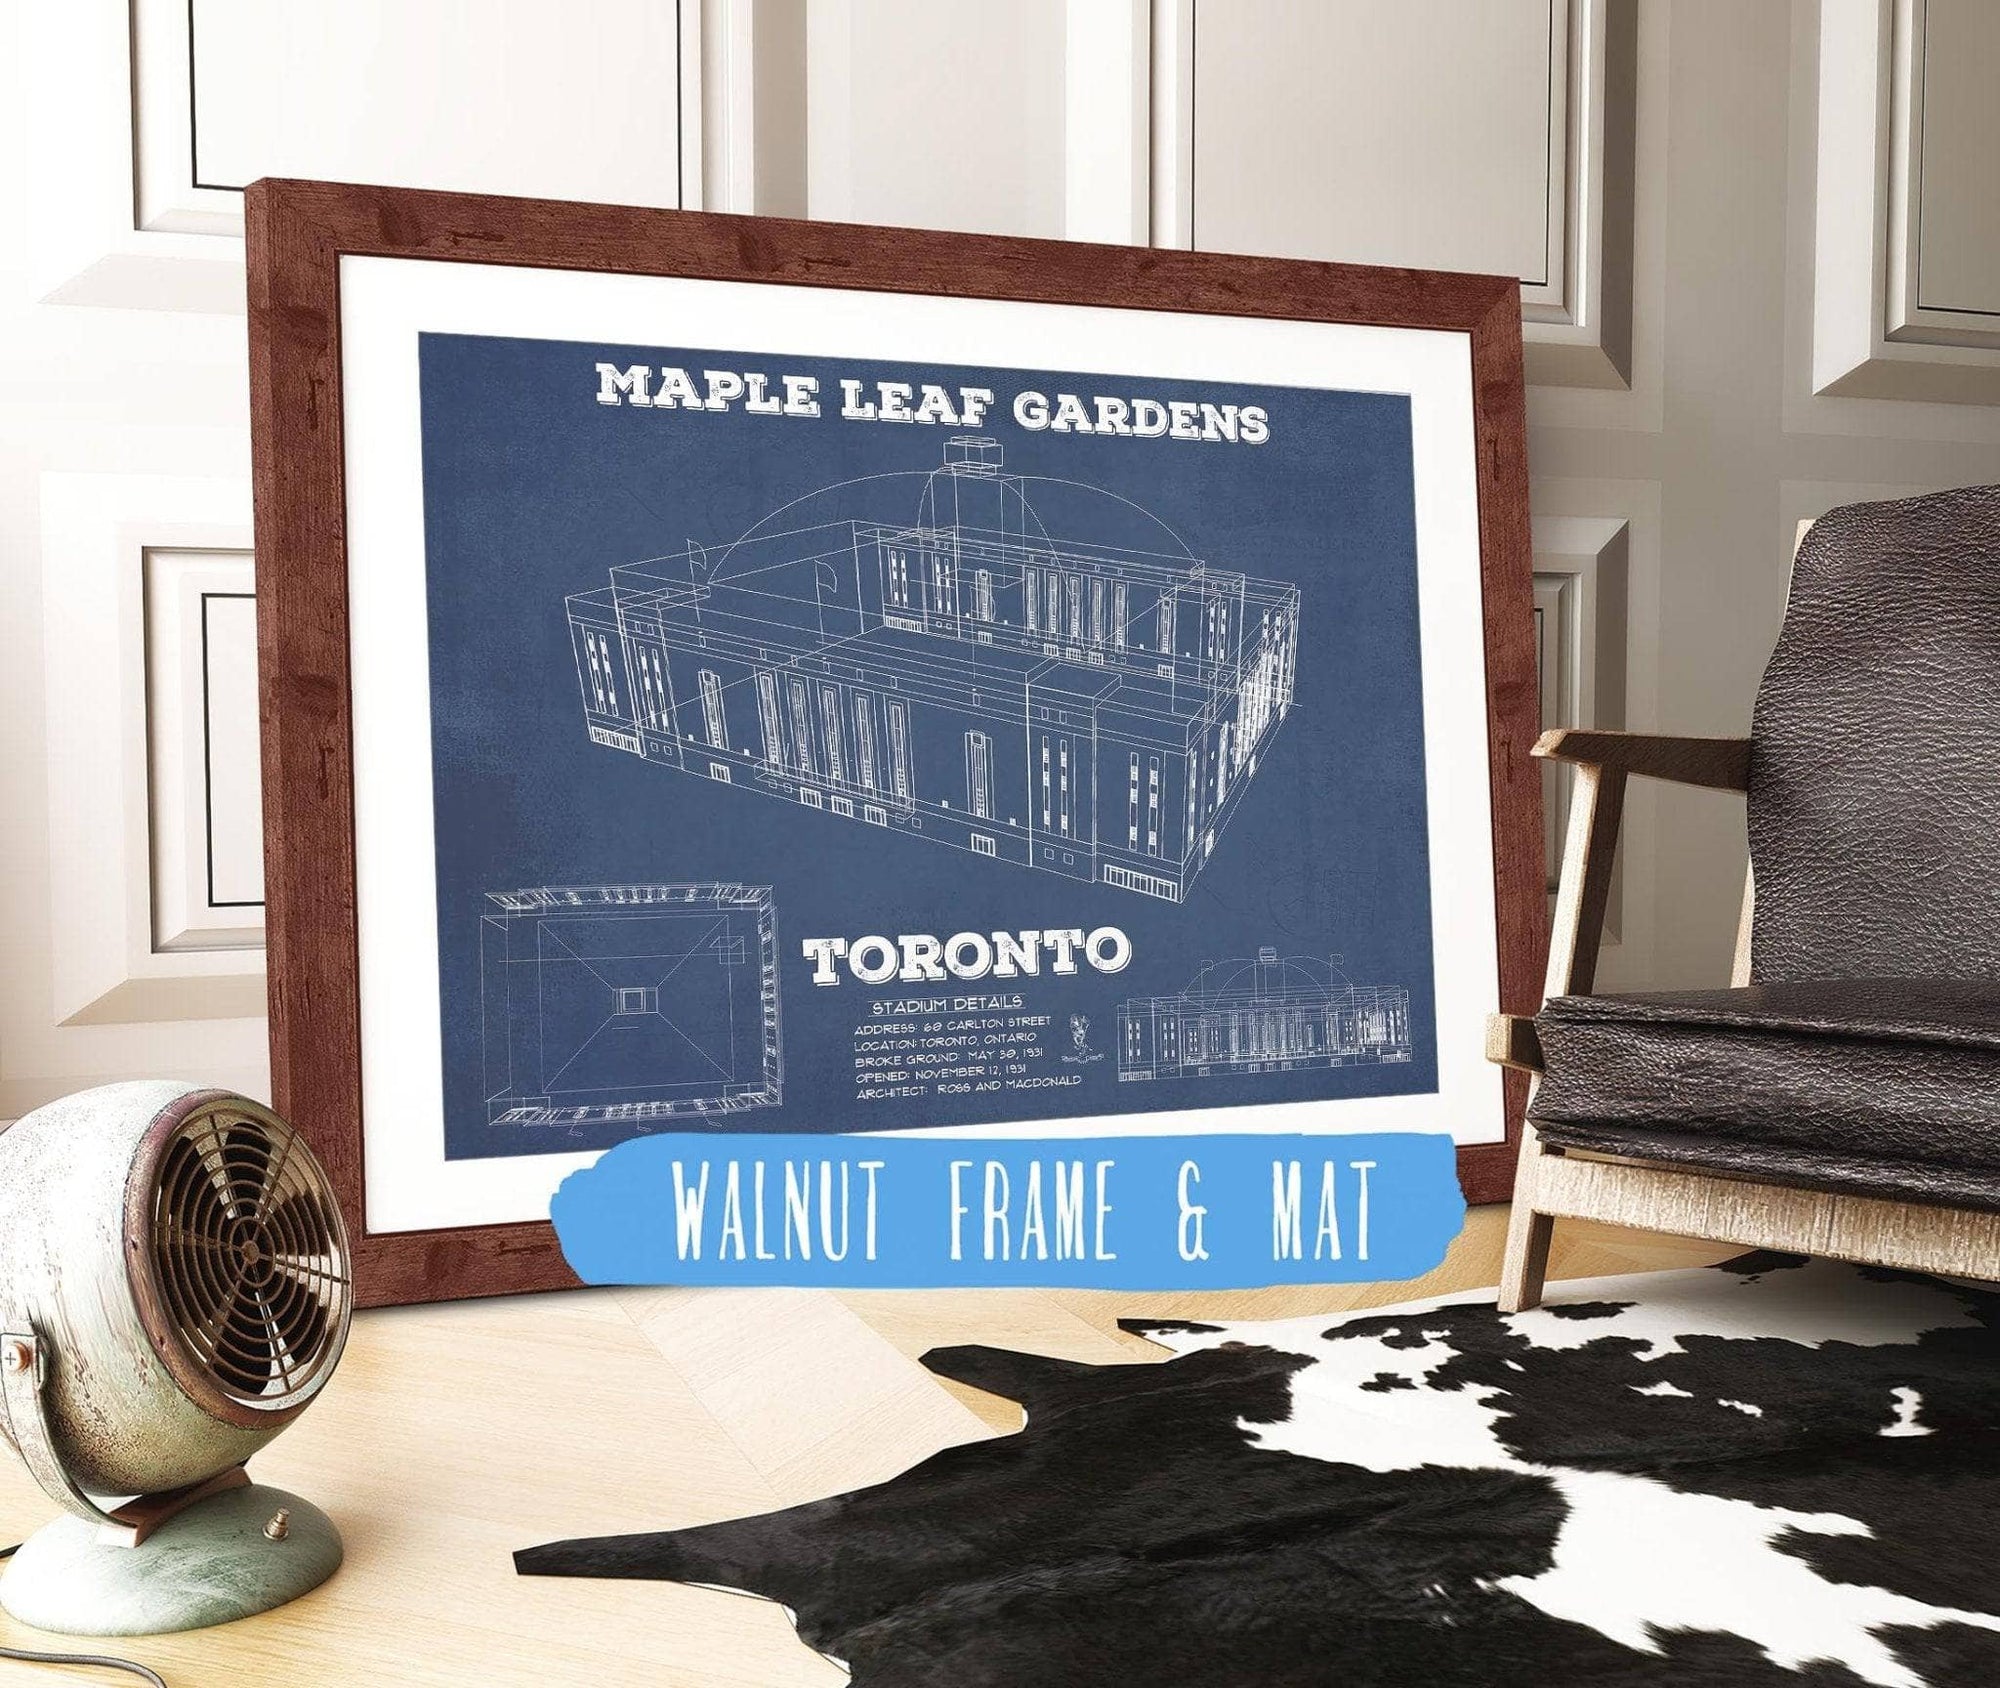 Cutler West 14" x 11" / Walnut Frame & Mat Maple Leaf Gardens - Vintage NHL Hockey Print 784291932-TOP